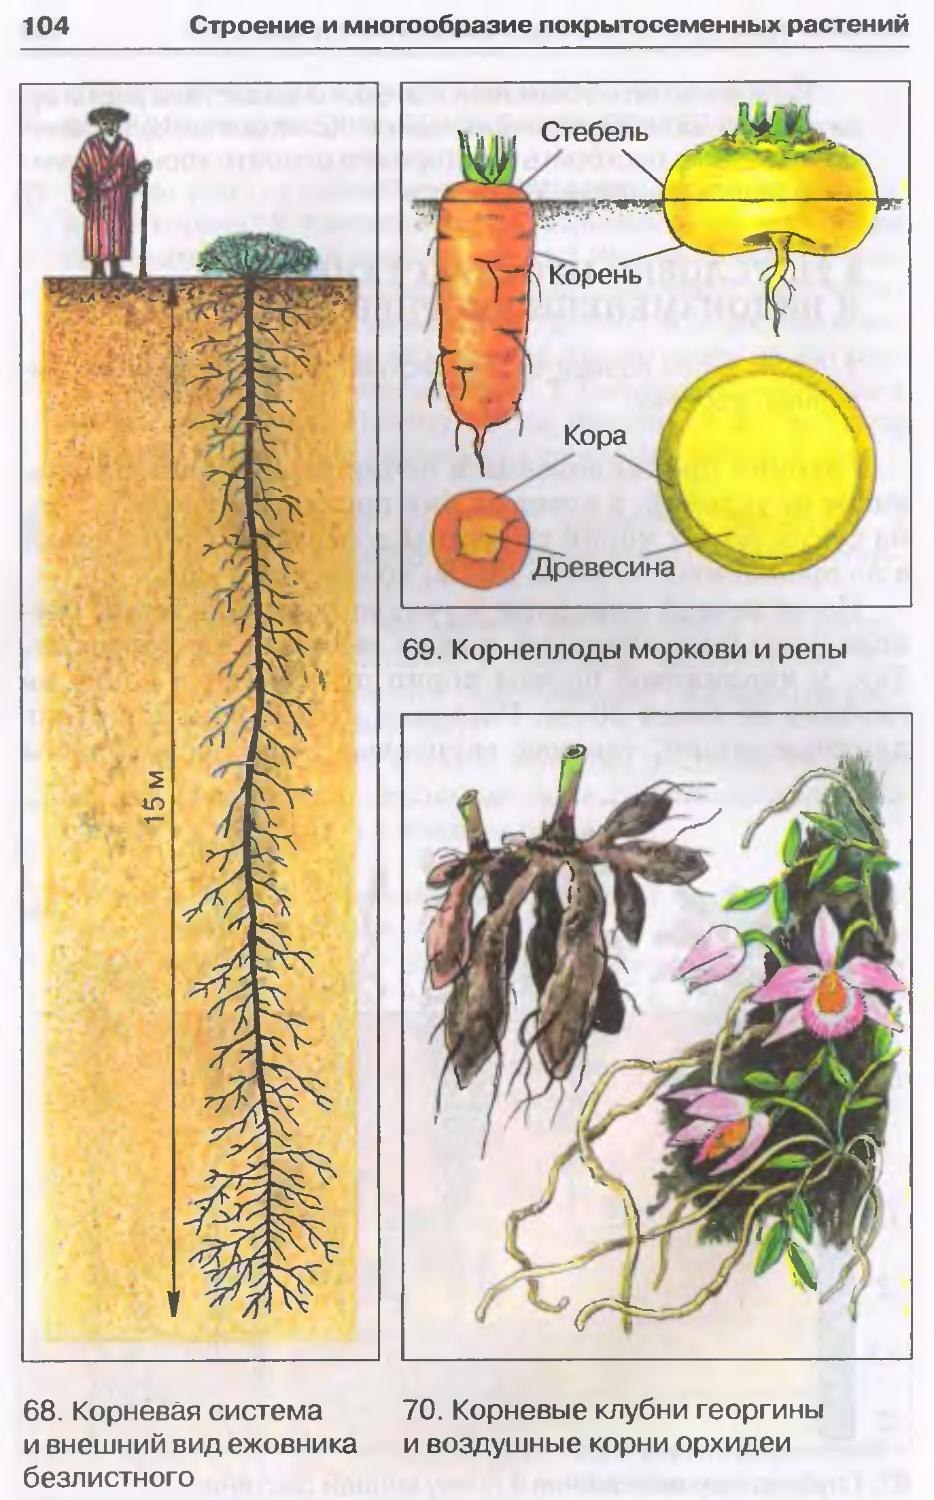 Виды измененные корни. Видоизменения корневой системы растений. Схема корневой системы моркови.